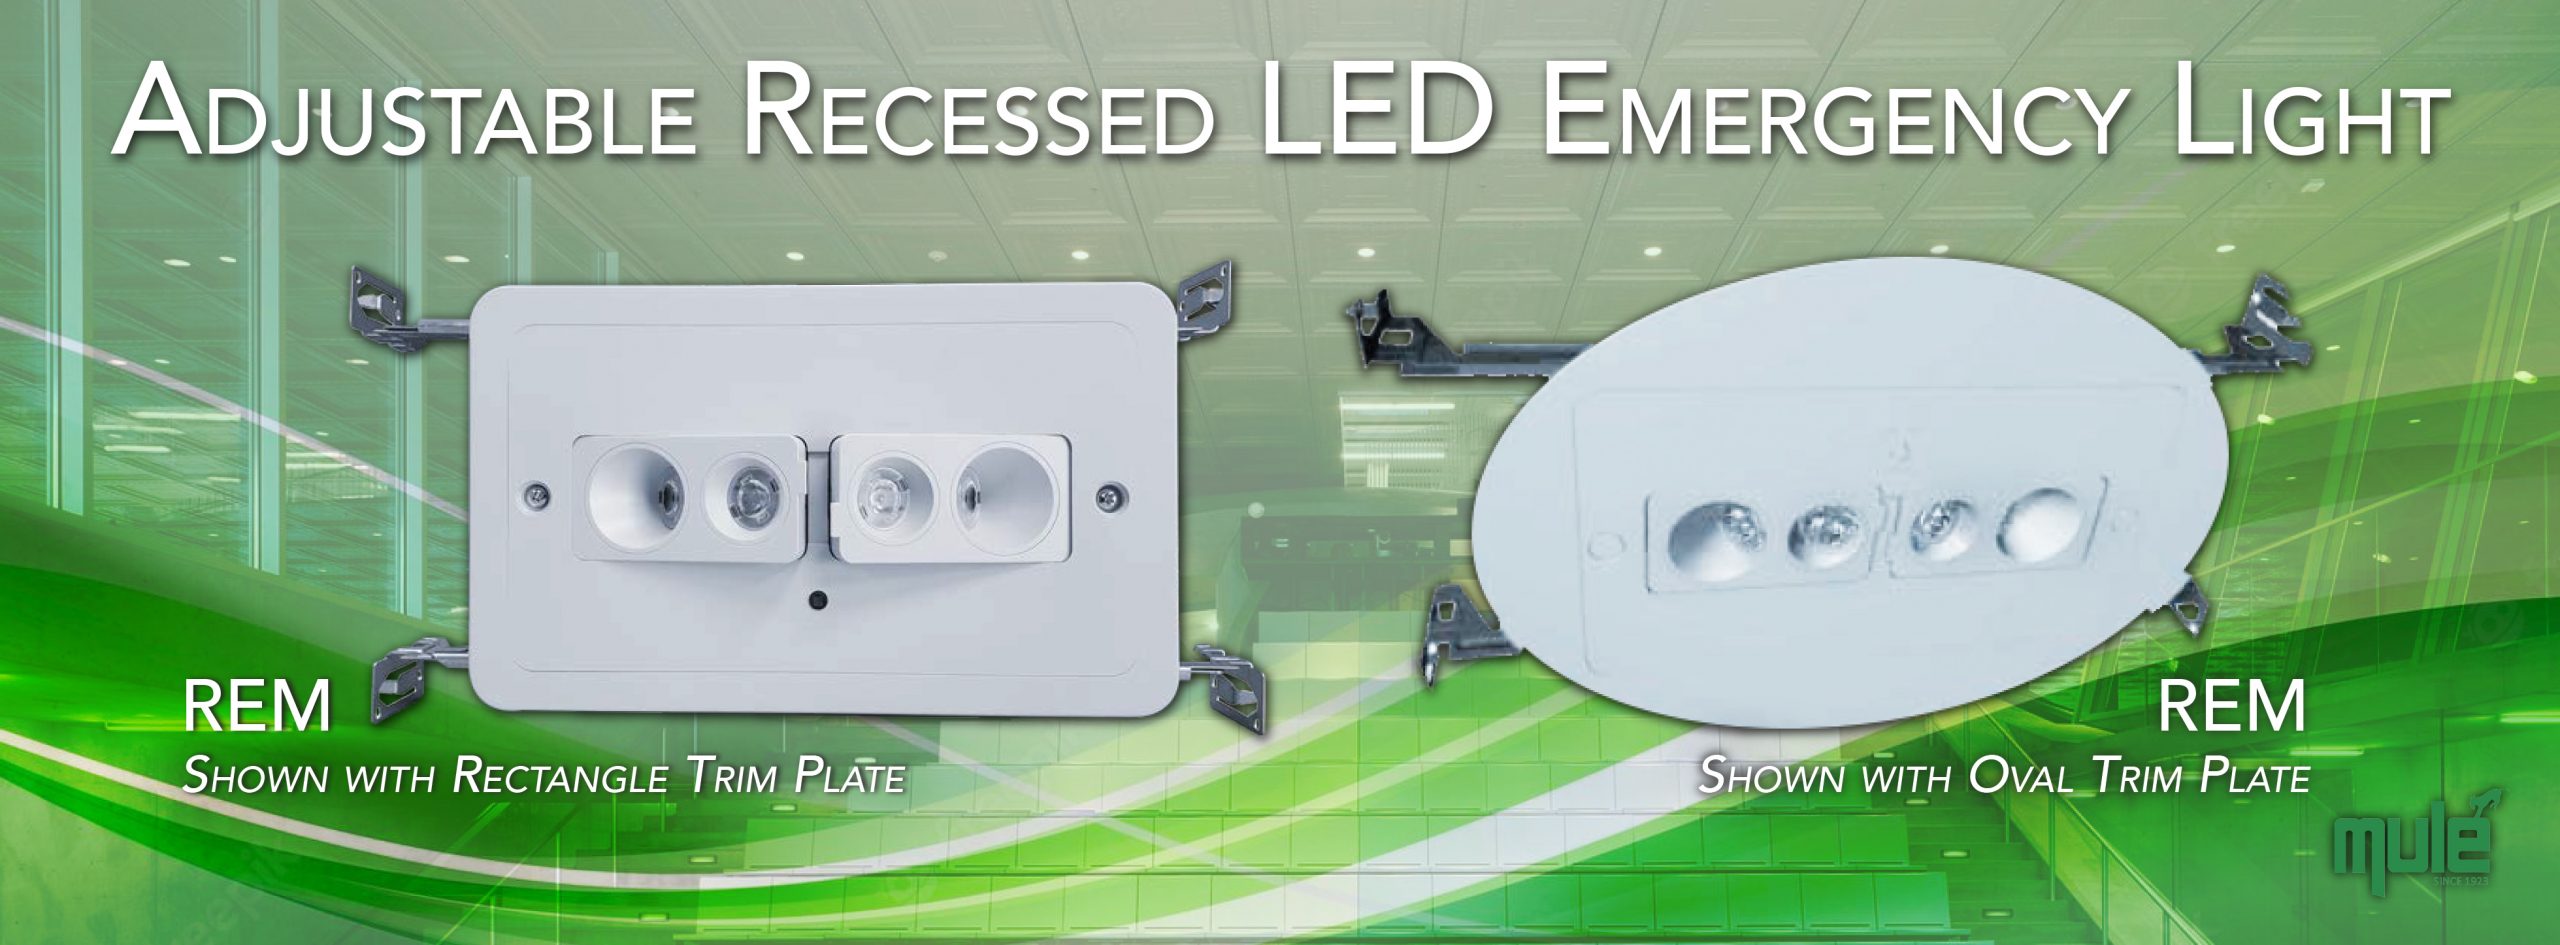 recessed emergency lighting fixtures